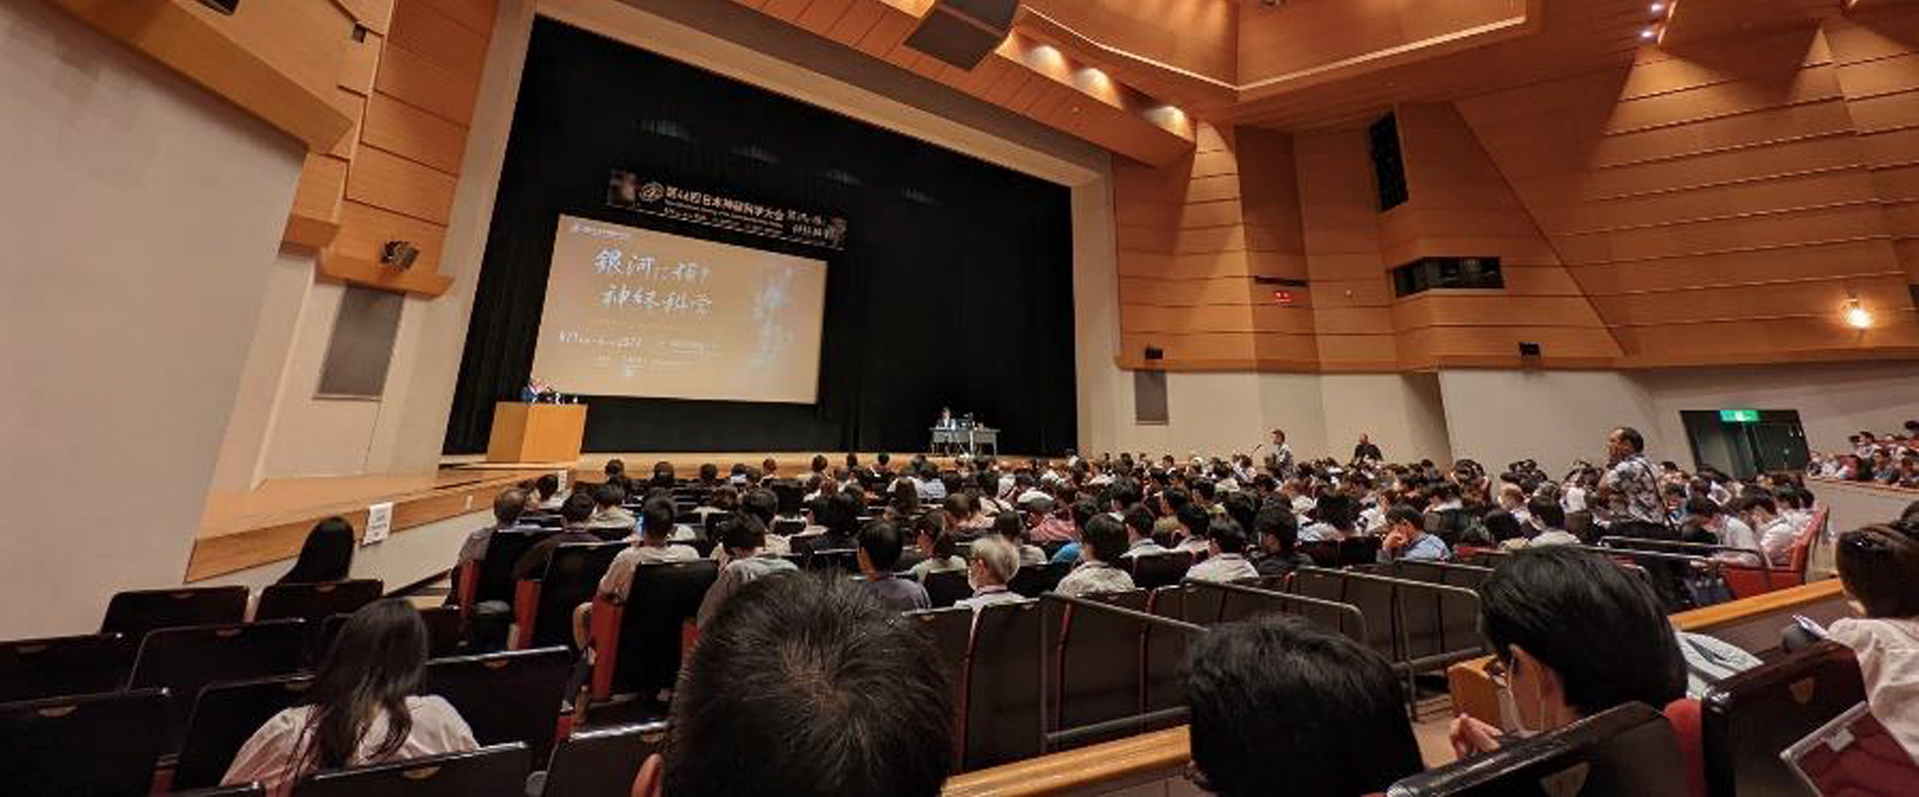 迈向神经科学的星辰大海 – 第46届日本神经科学学会年会